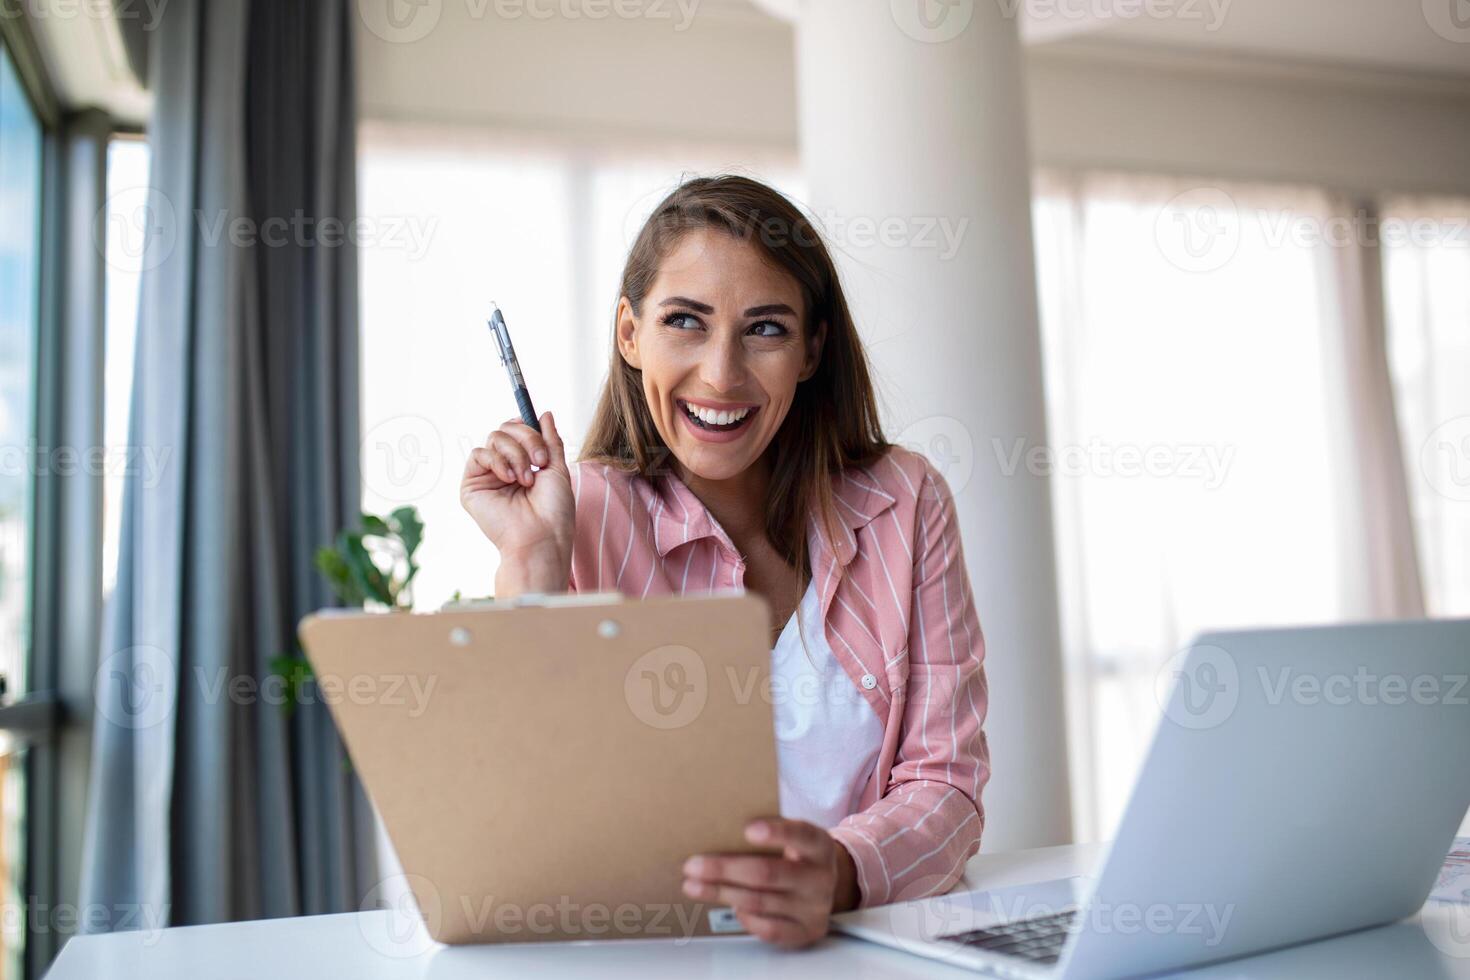 Remote-Job-, Technologie- und People-Konzept - glücklich lächelnde junge Geschäftsfrau mit Laptop-Computer und Papieren, die im Home Office arbeiten foto